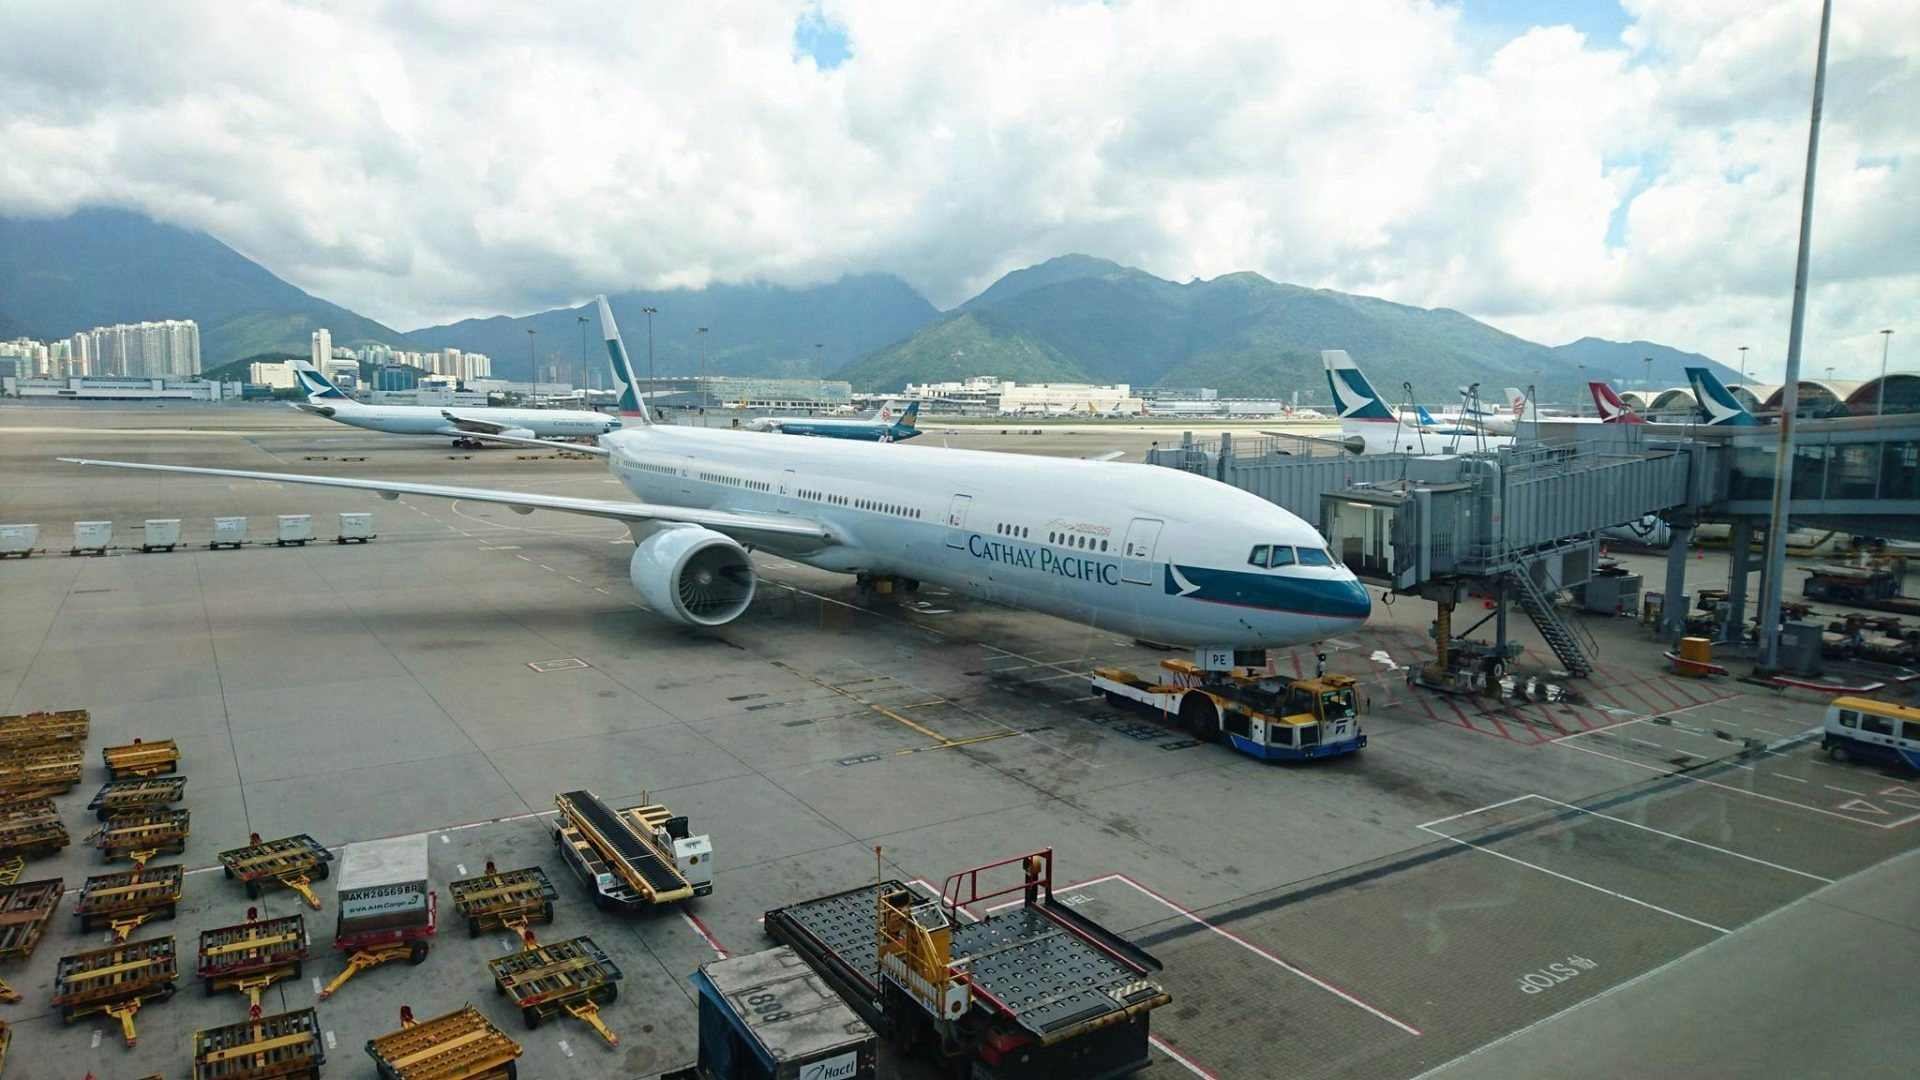 Cathay Pacific Plane at Hong Kong International Airport (Daniel Meesak)